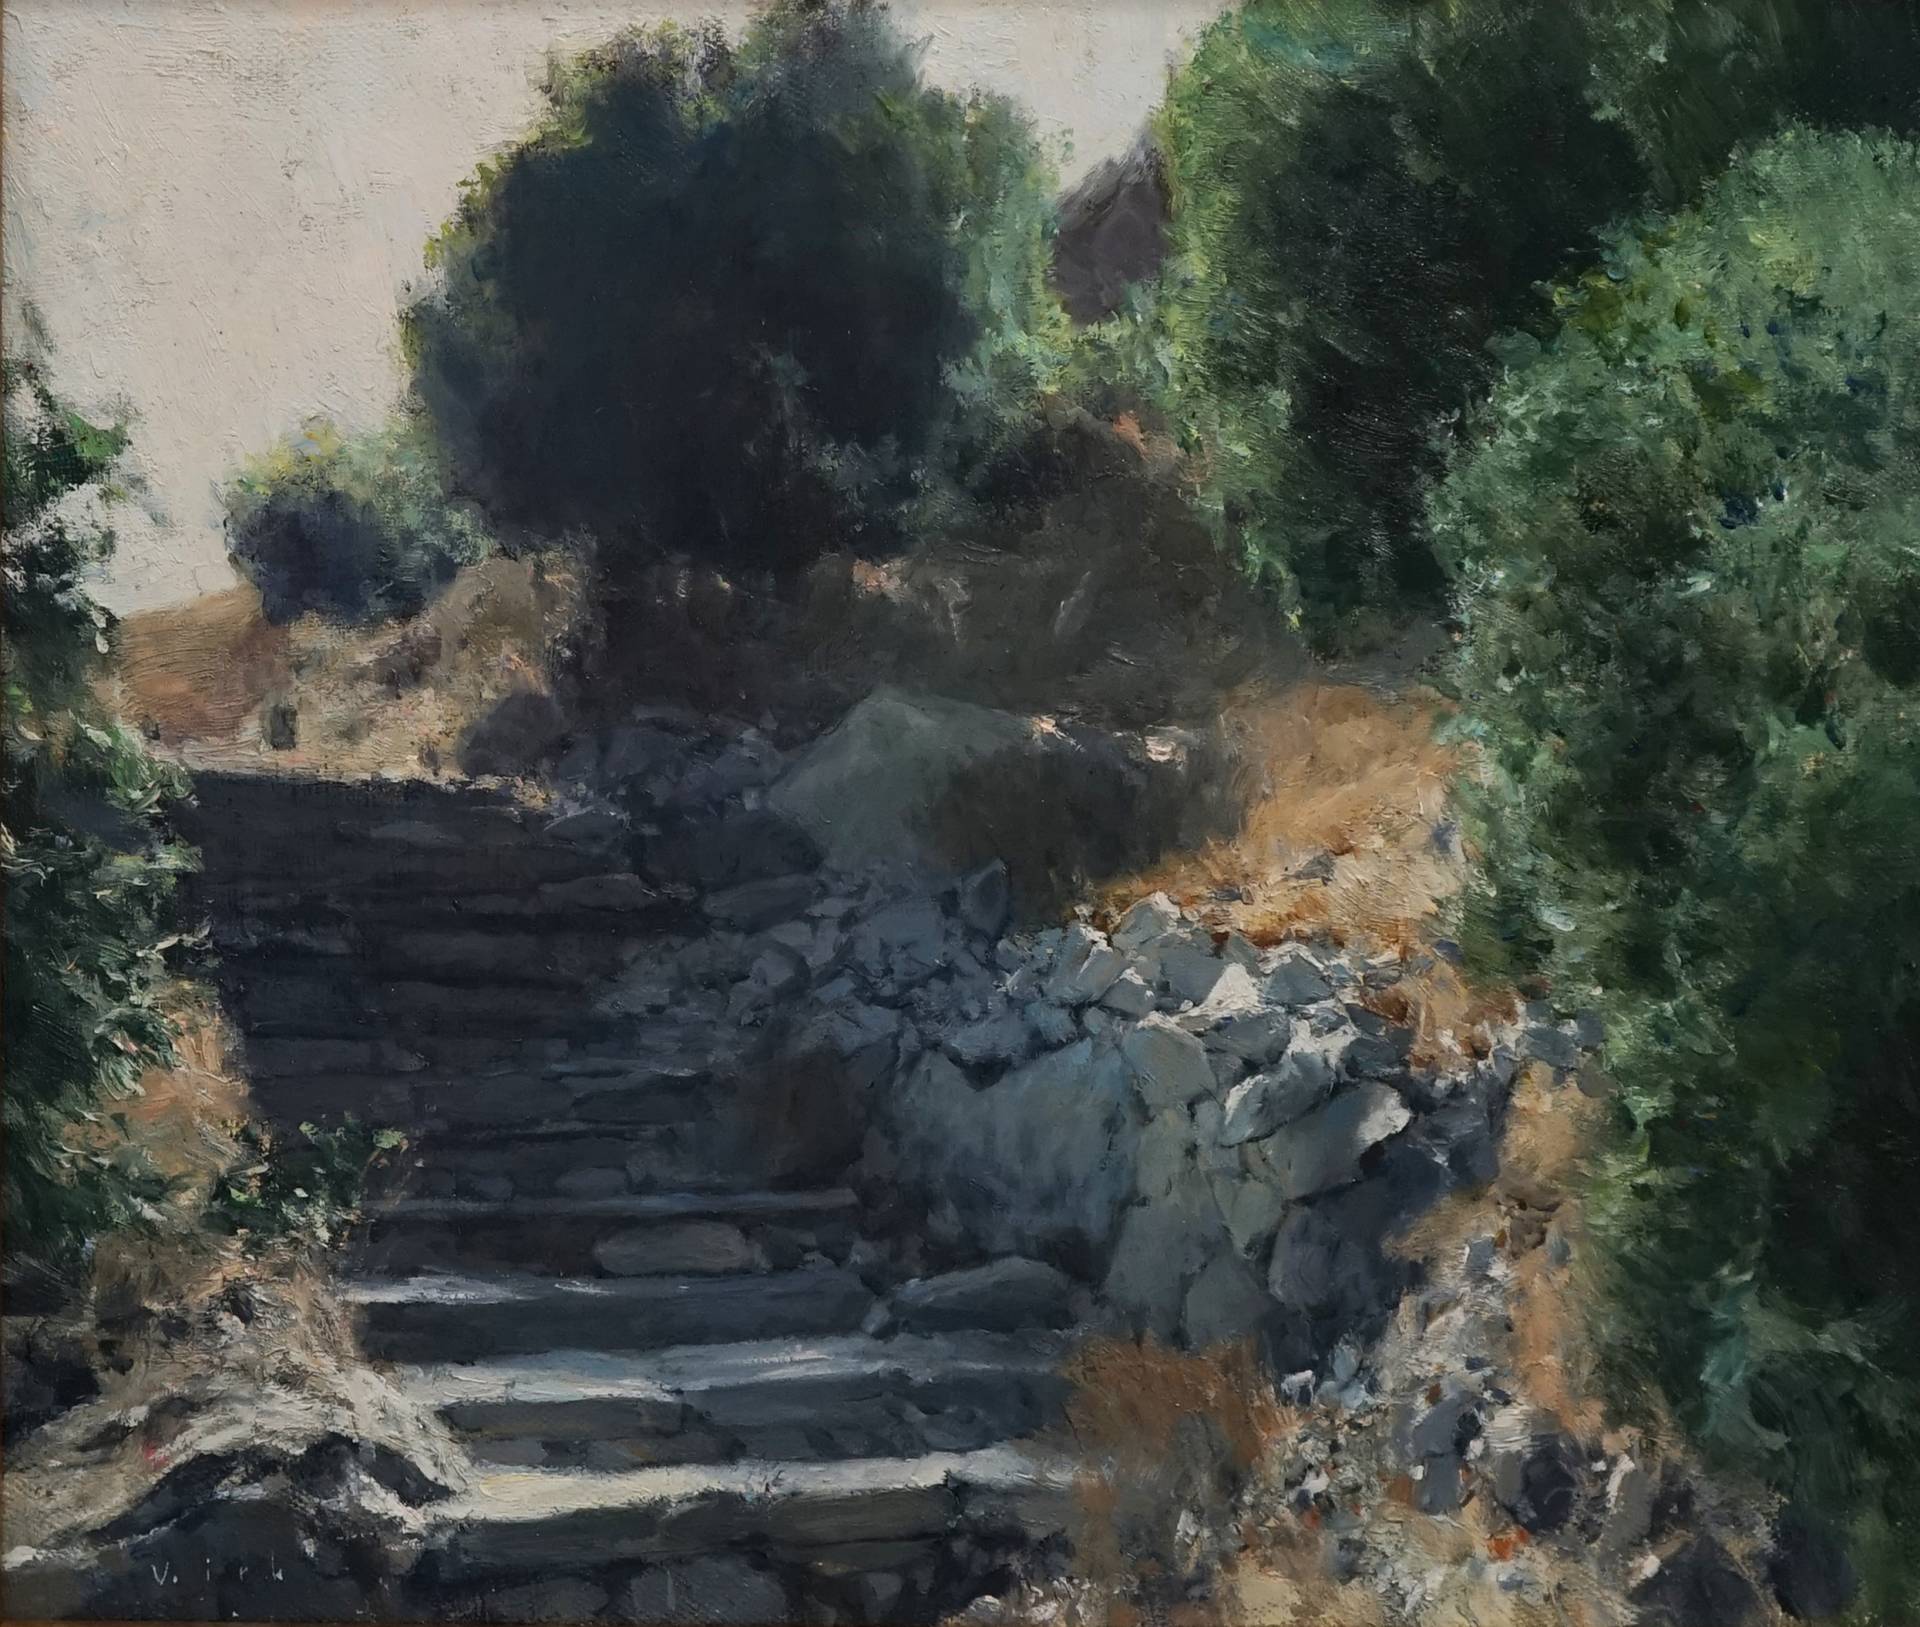 Steps - 1, Vladimir Kirillov, Buy the painting Oil